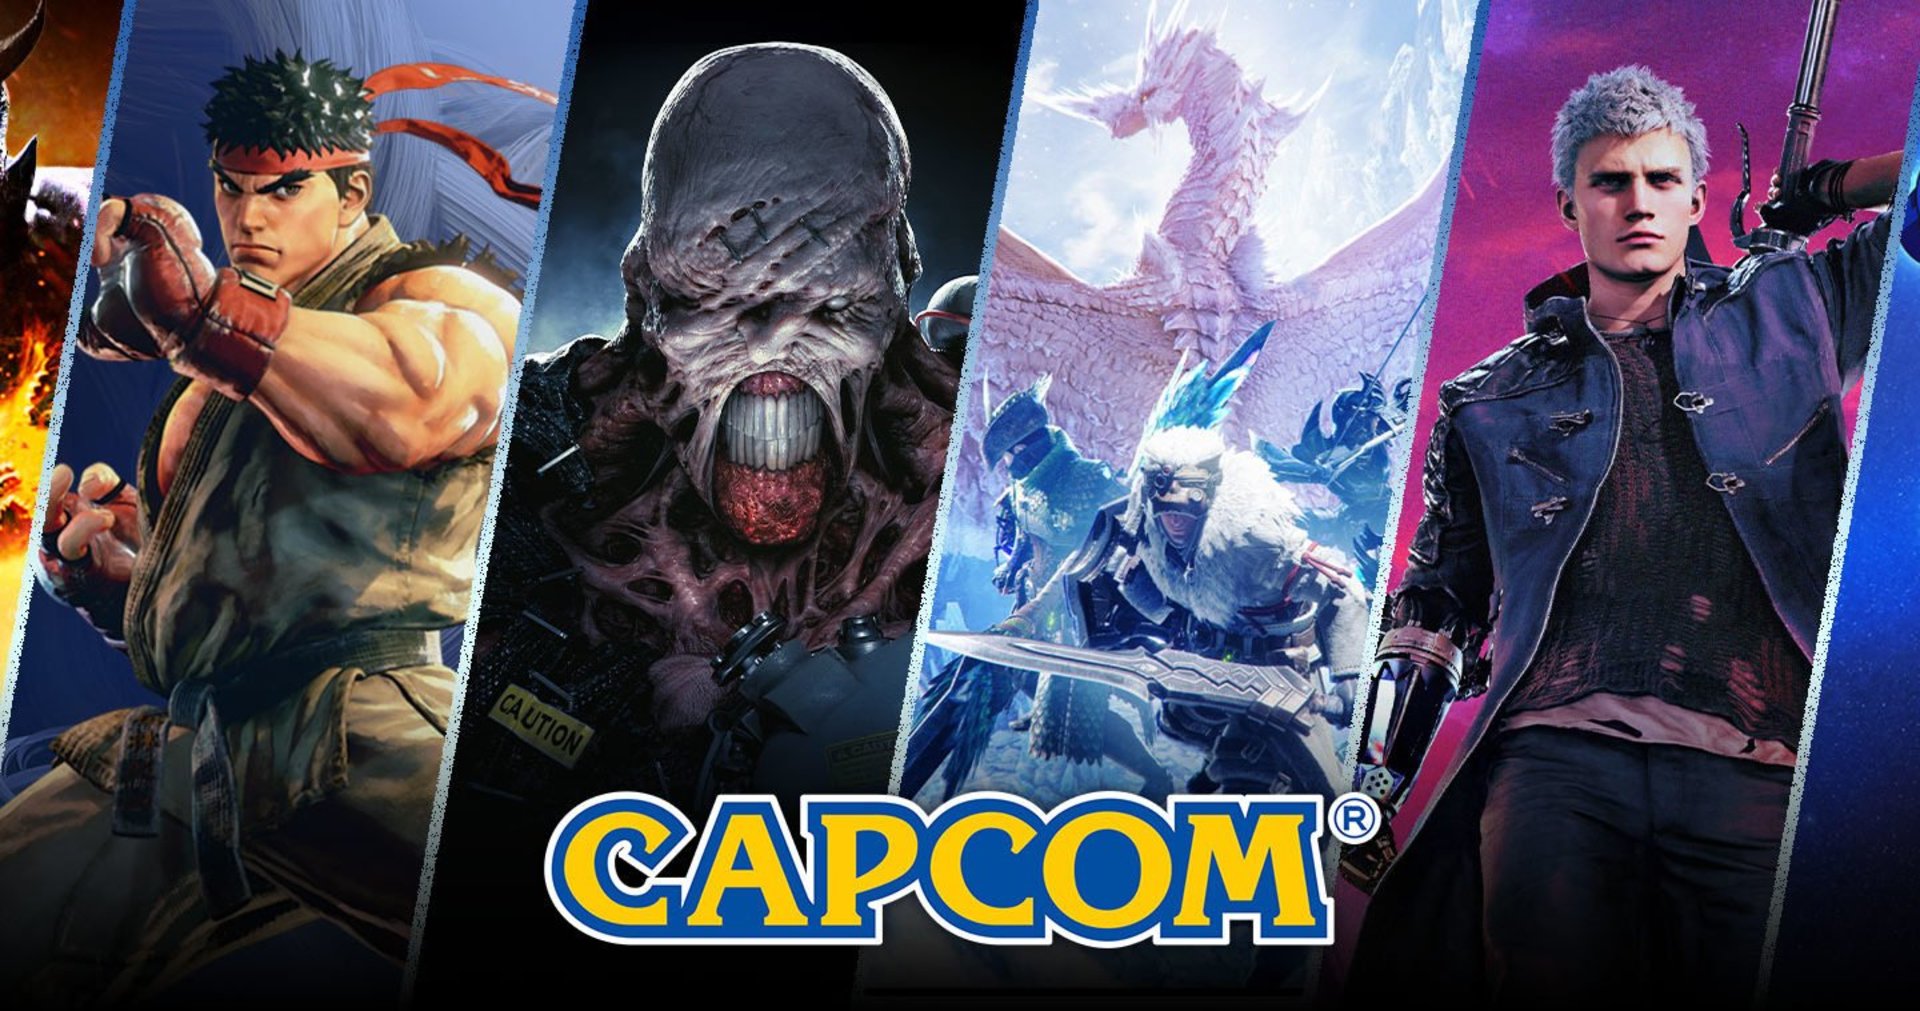 I giochi Capcom su Steam sono aumentati di prezzo più volte in Kazakistan e Turchia